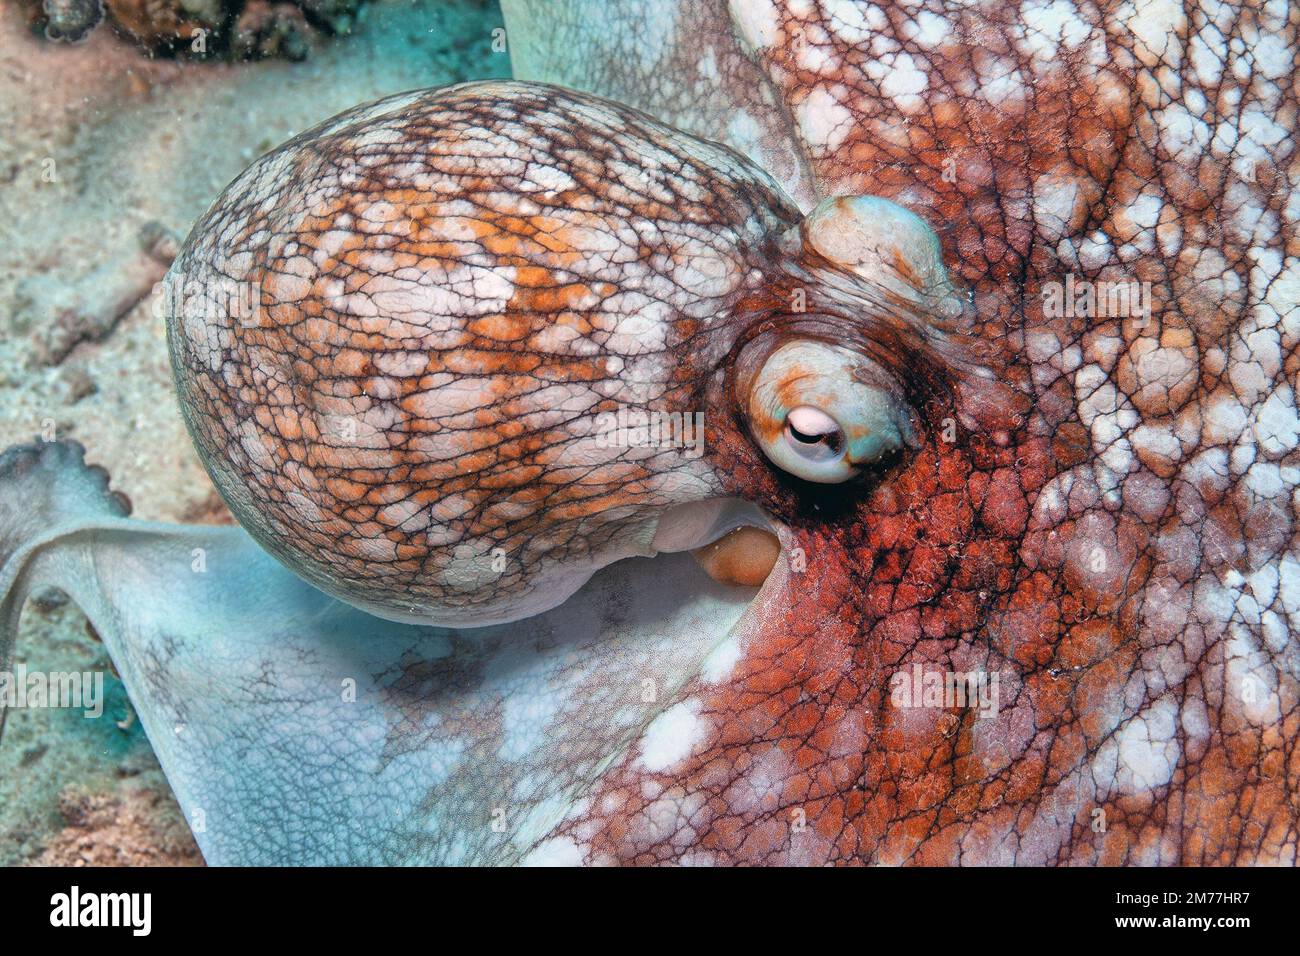 L'octopus de récif des Caraïbes, l'Octopus briaeus est un animal marin de récif de corail. Il a huit bras longs qui varient en longueur et en diamètre Banque D'Images